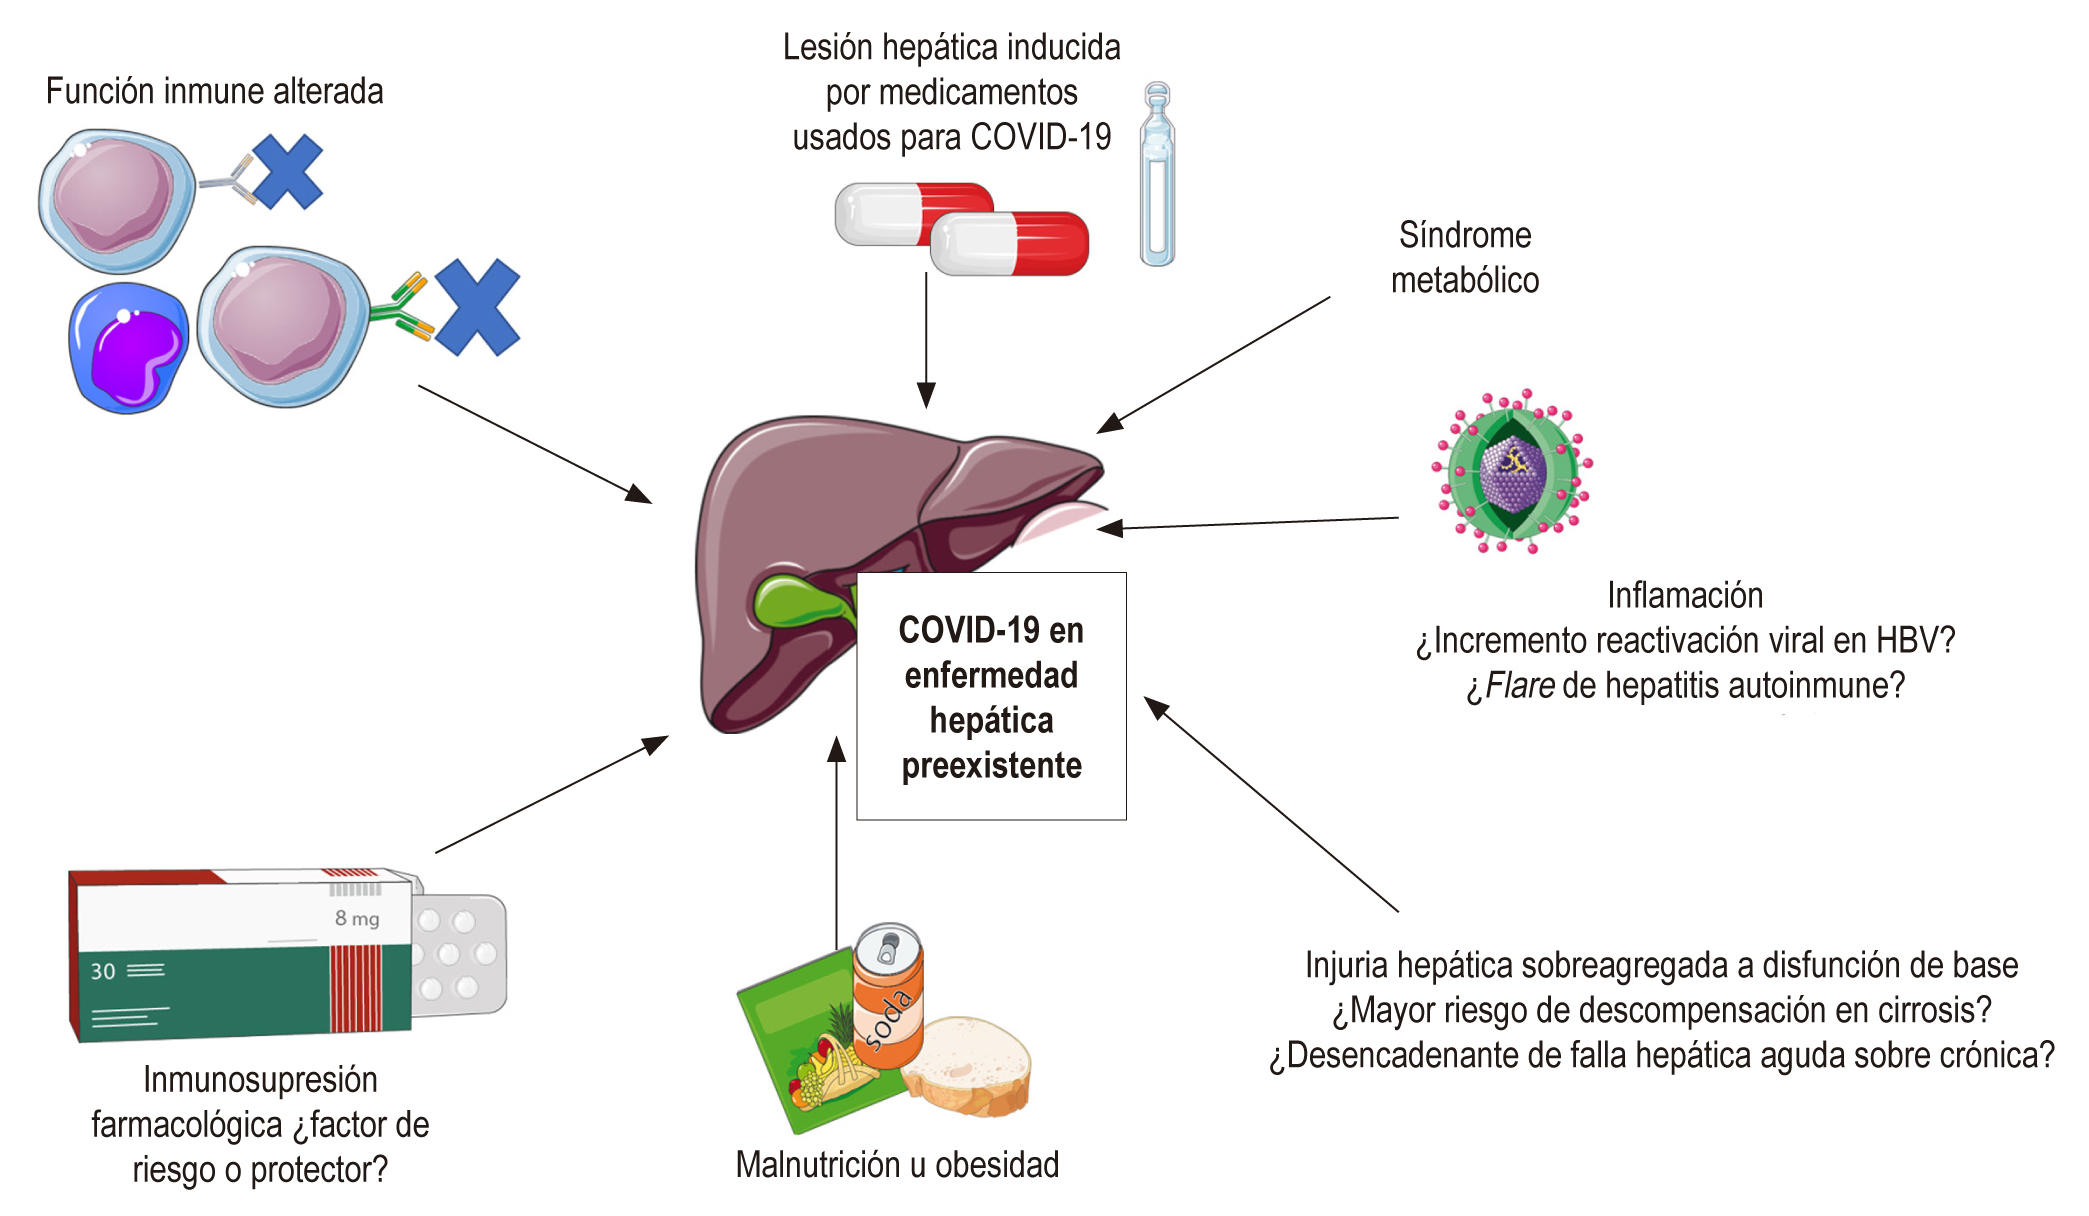 Figura 2. COVID-19 en enfermedad hepática preexistente